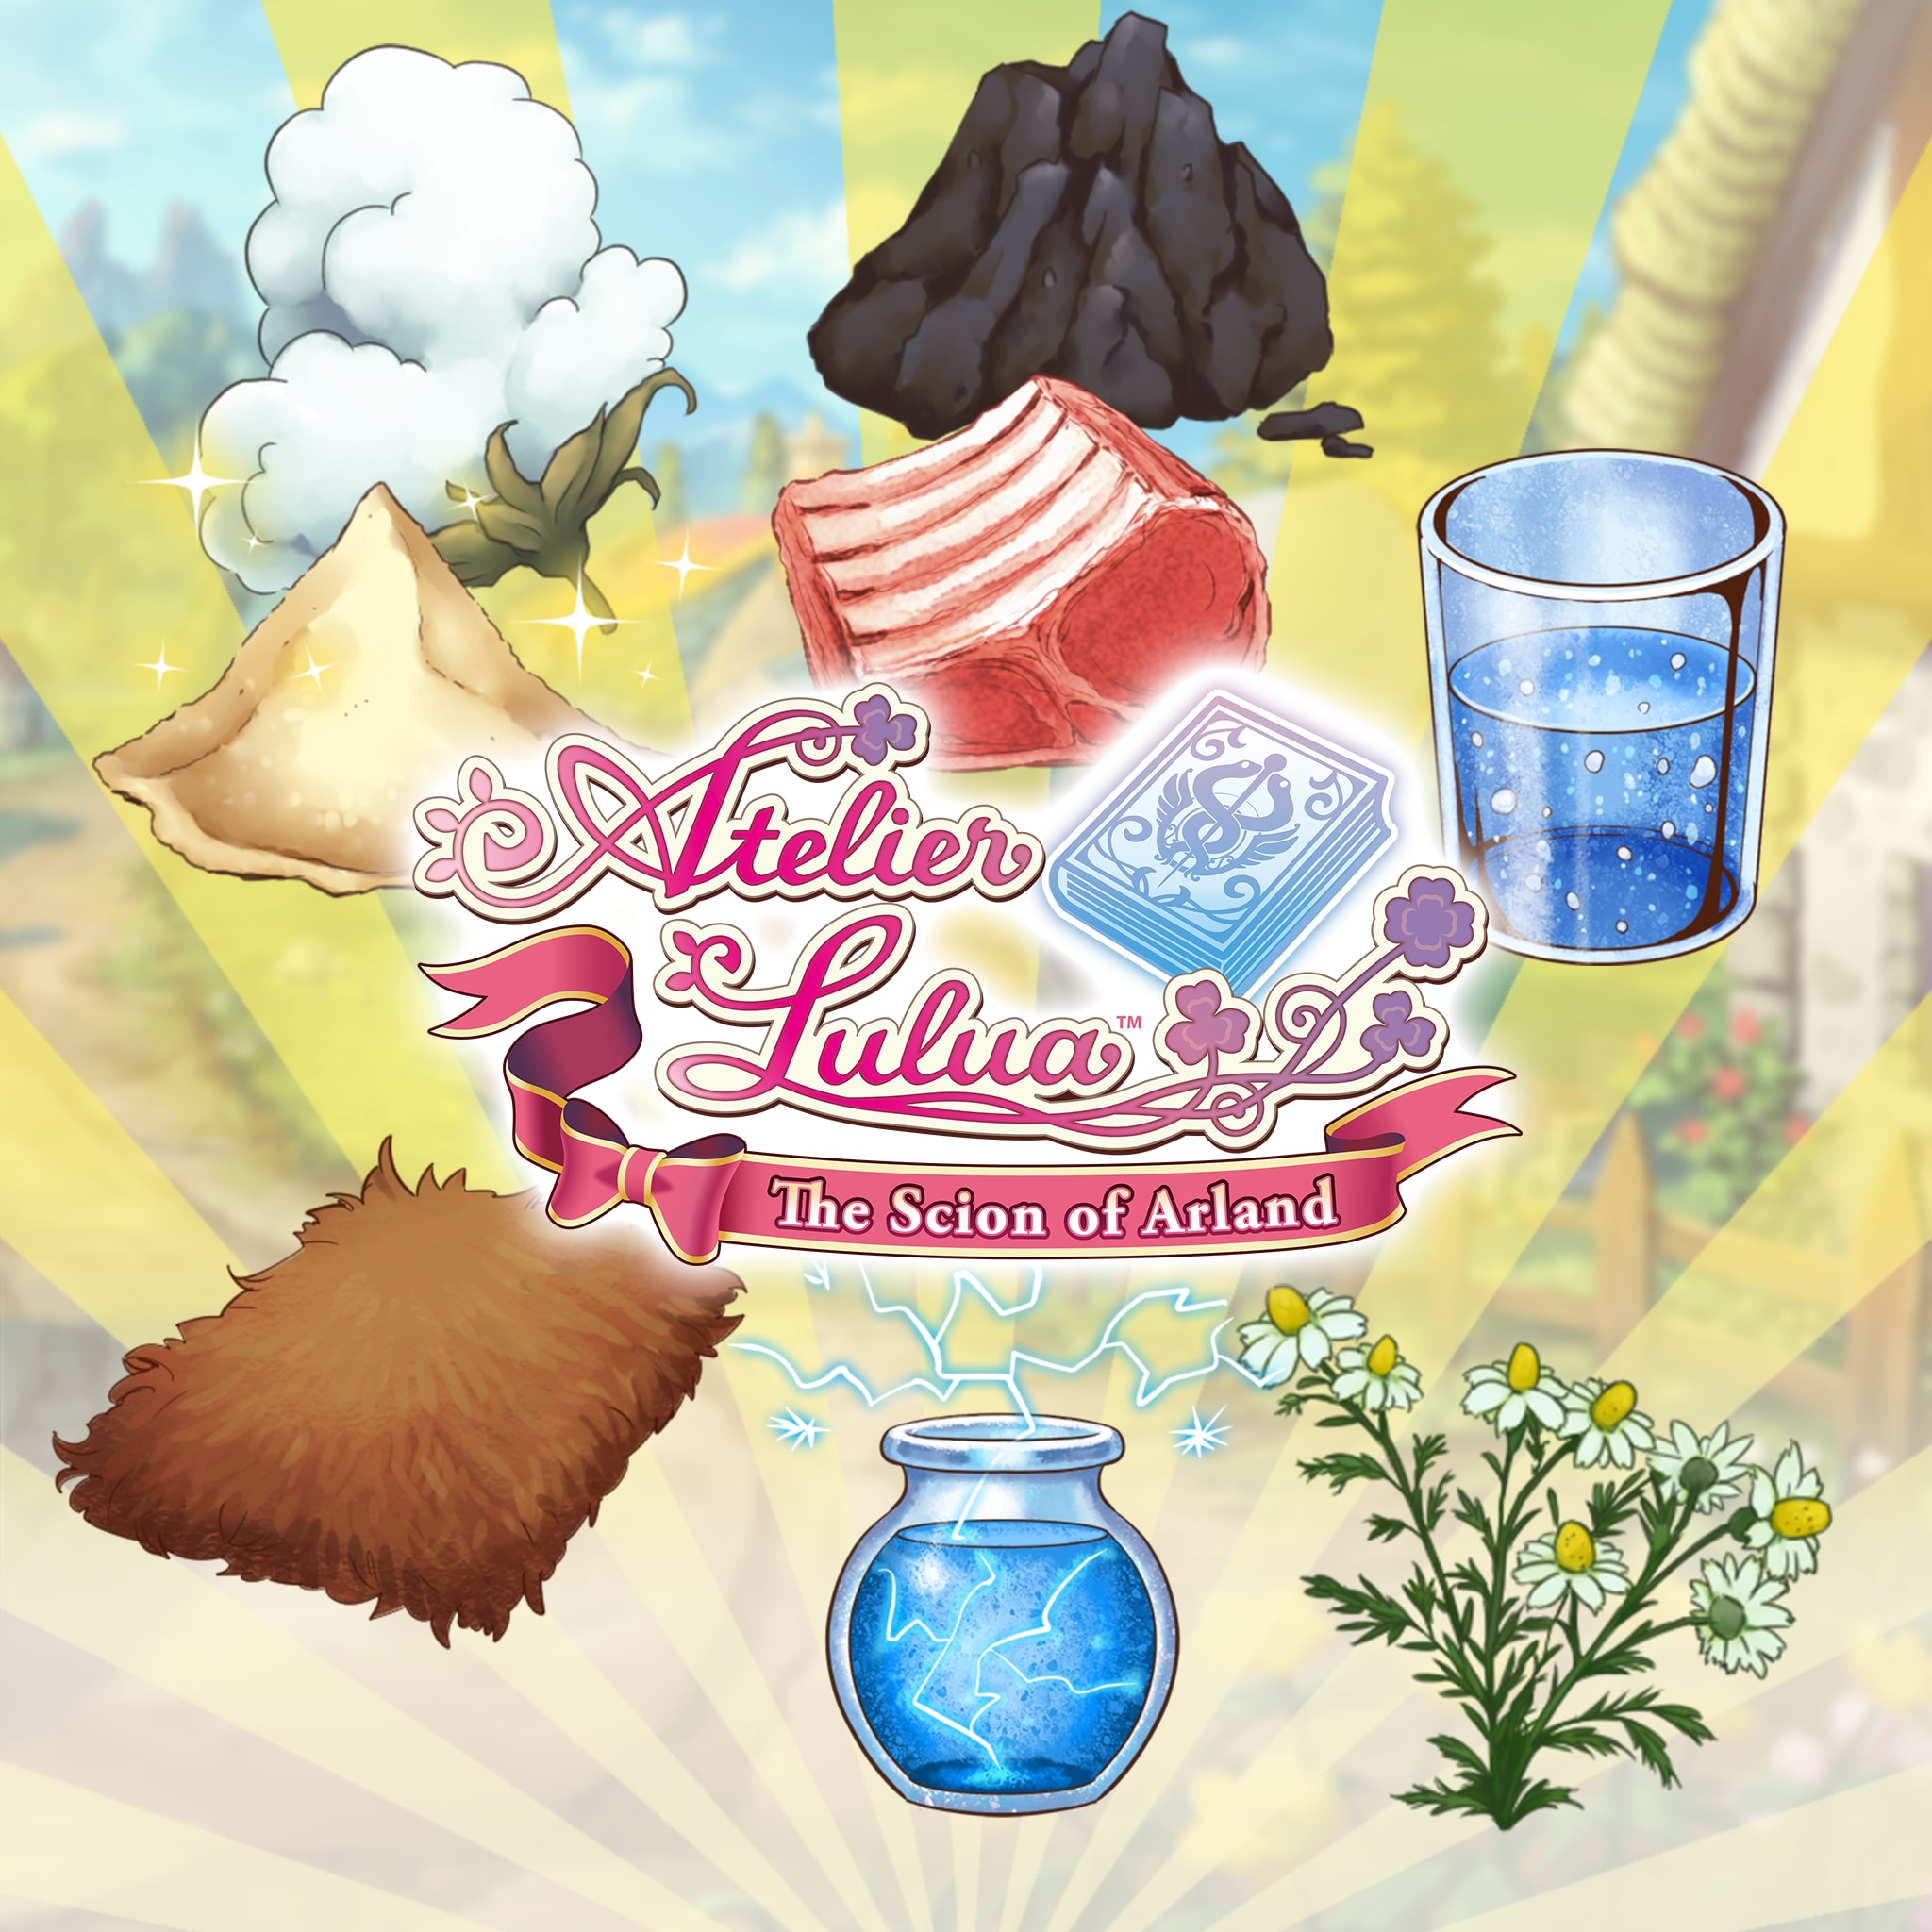 Atelier Lulua: Newbie Support Item Pack